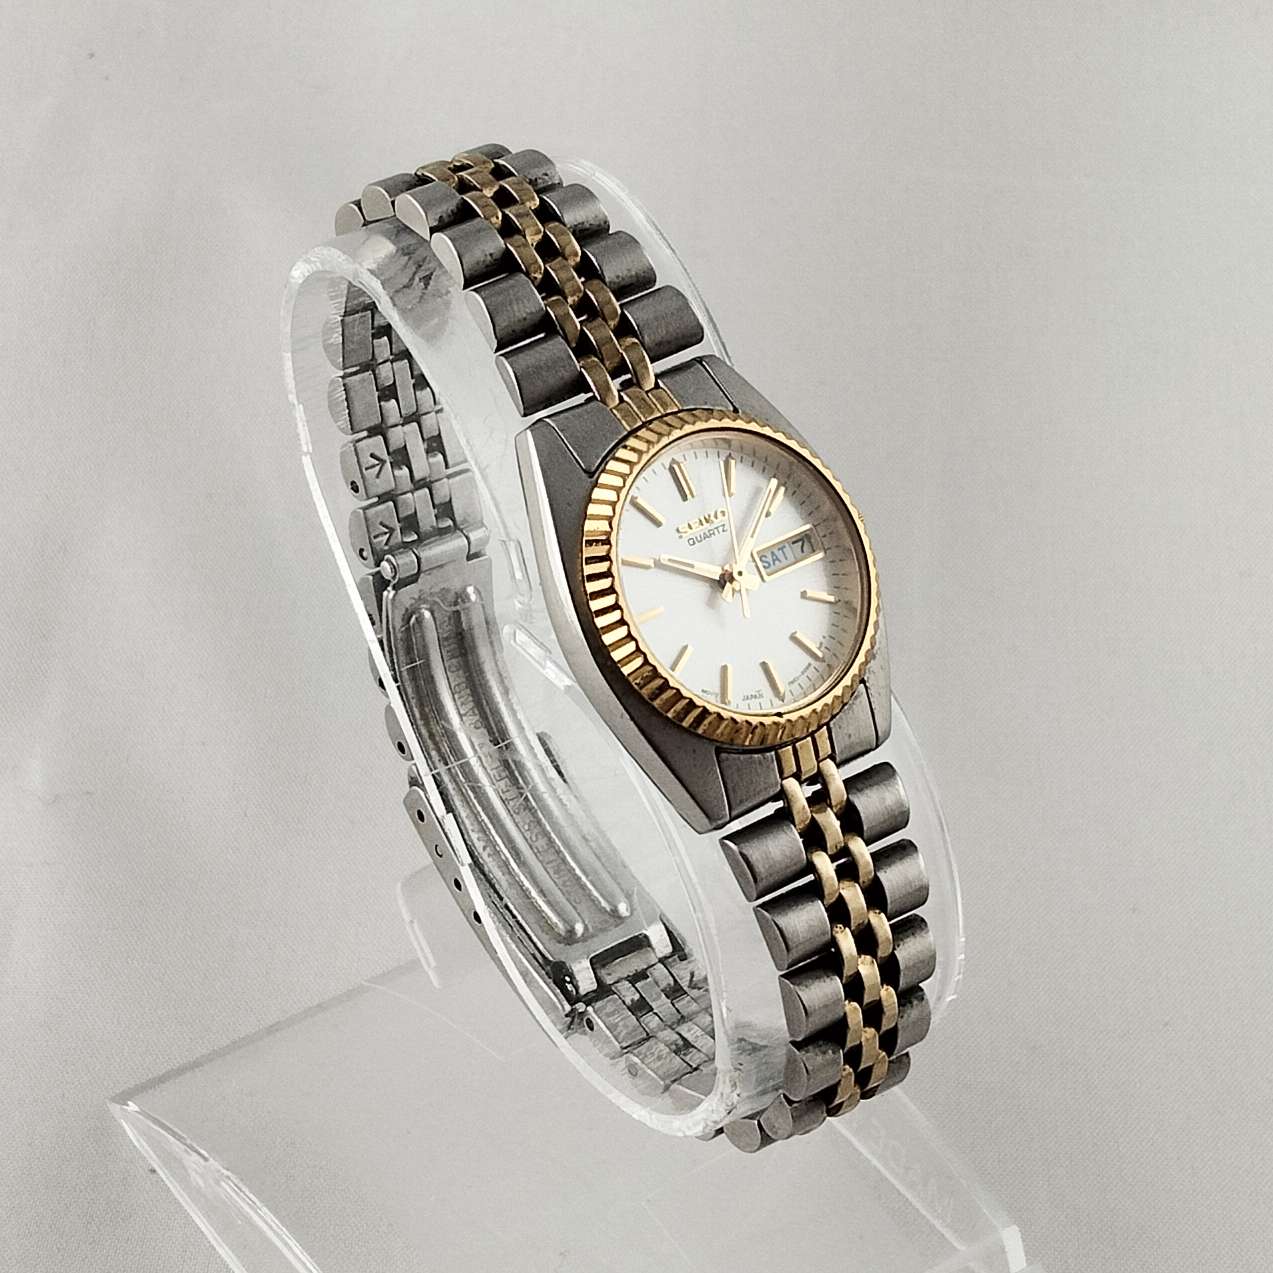 Seiko Unisex Watch, White Dial, Bracelet Strap